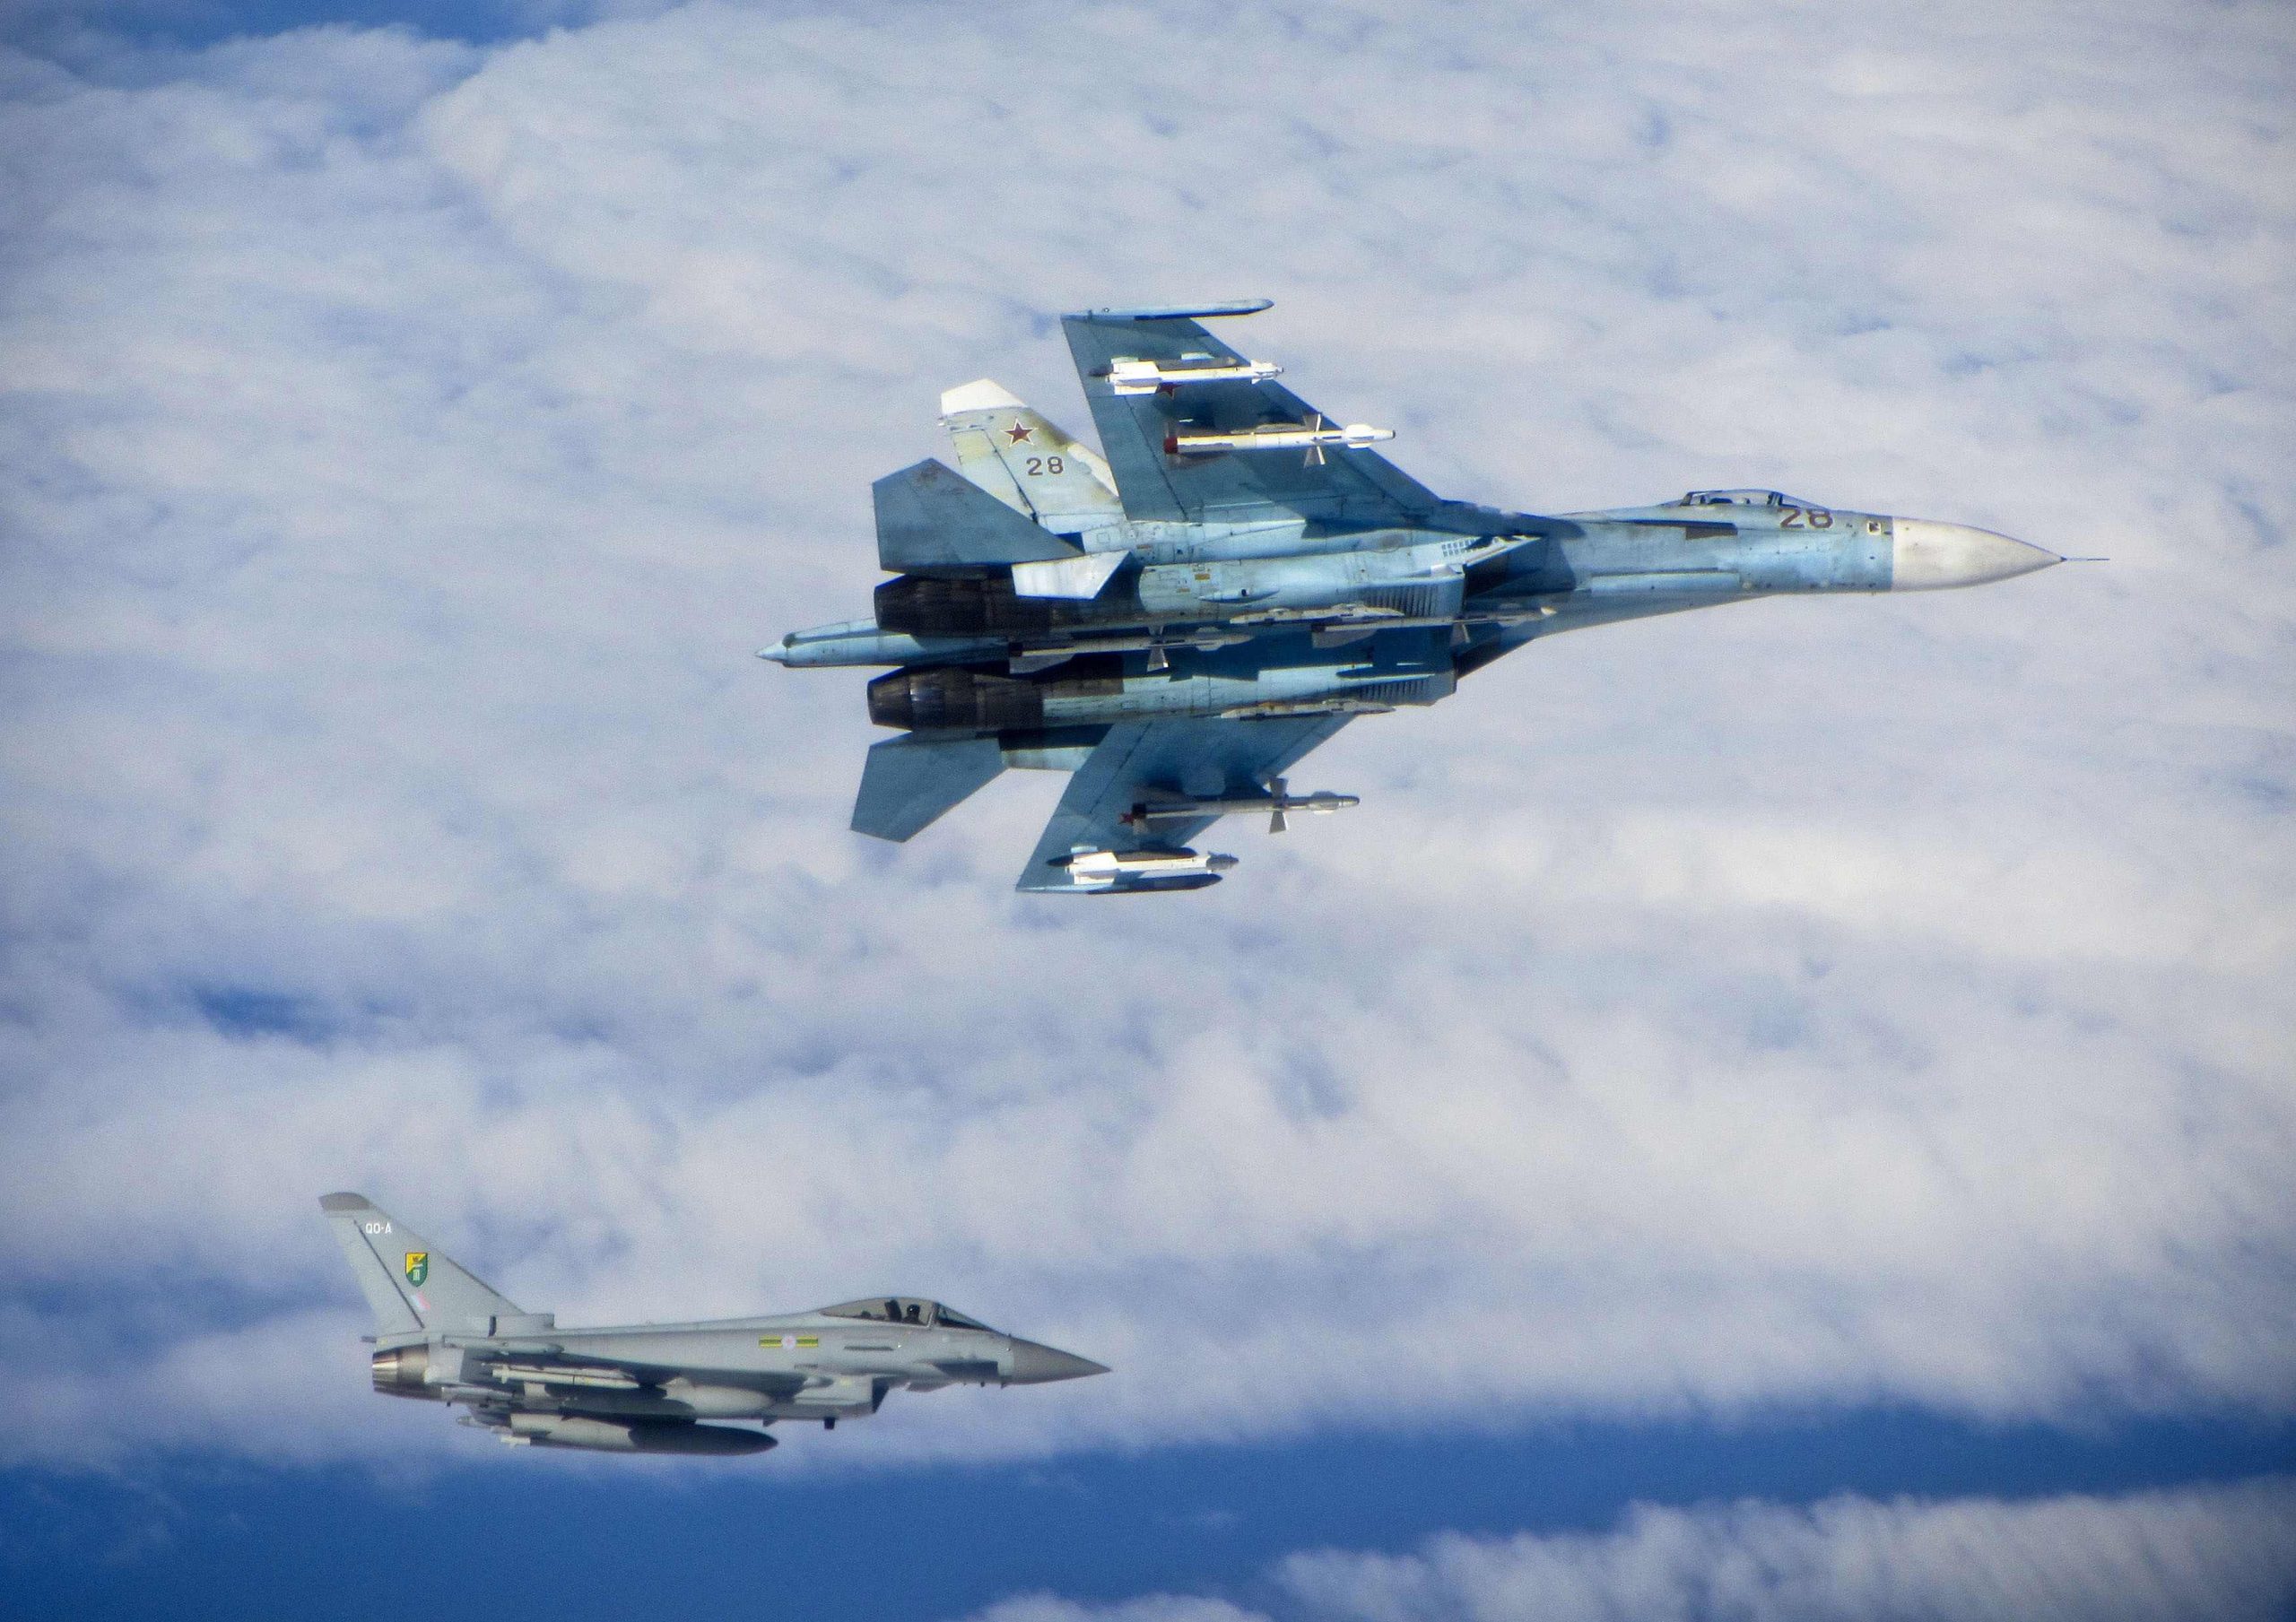 Ουκρανία: Αμερικανικά σχέδια για αποστολή μαχητικών αεροσκαφών σε συνεργασία με την Πολωνία